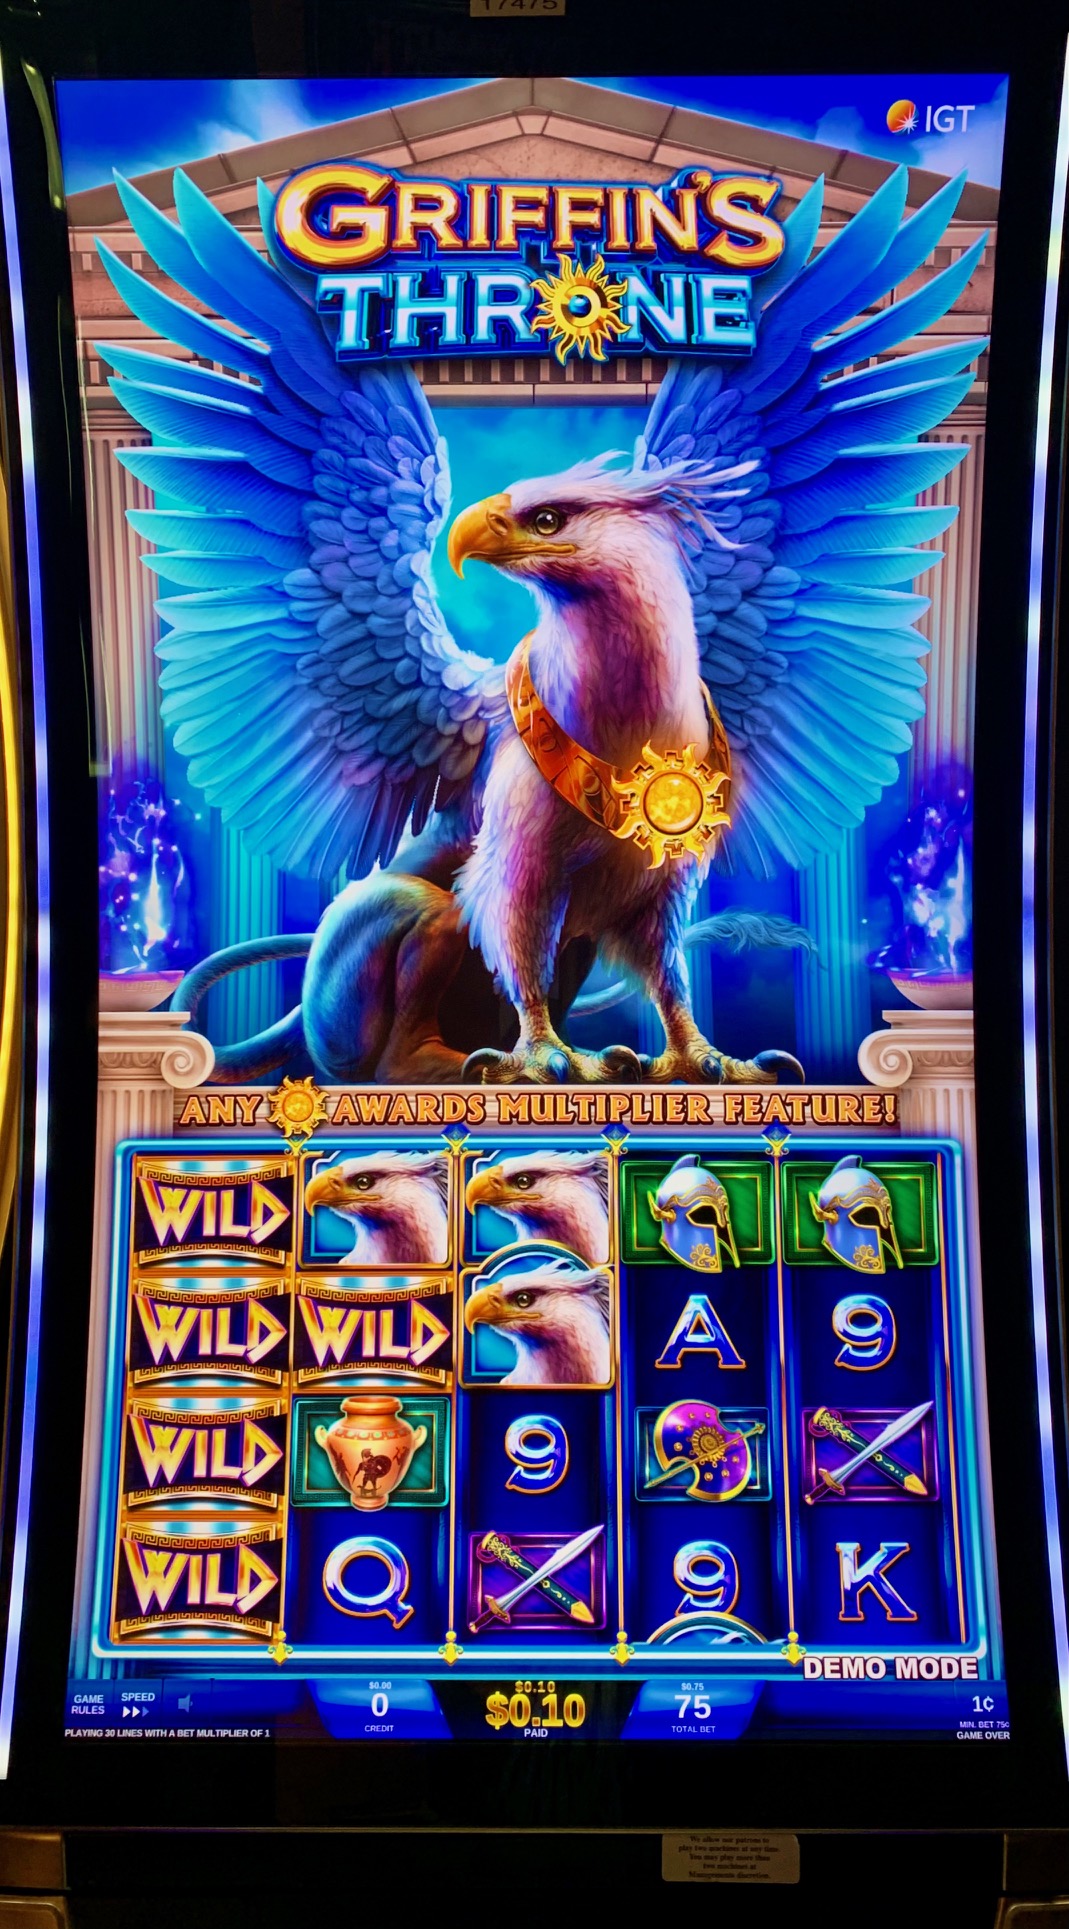 Griffins Throne best slot machine